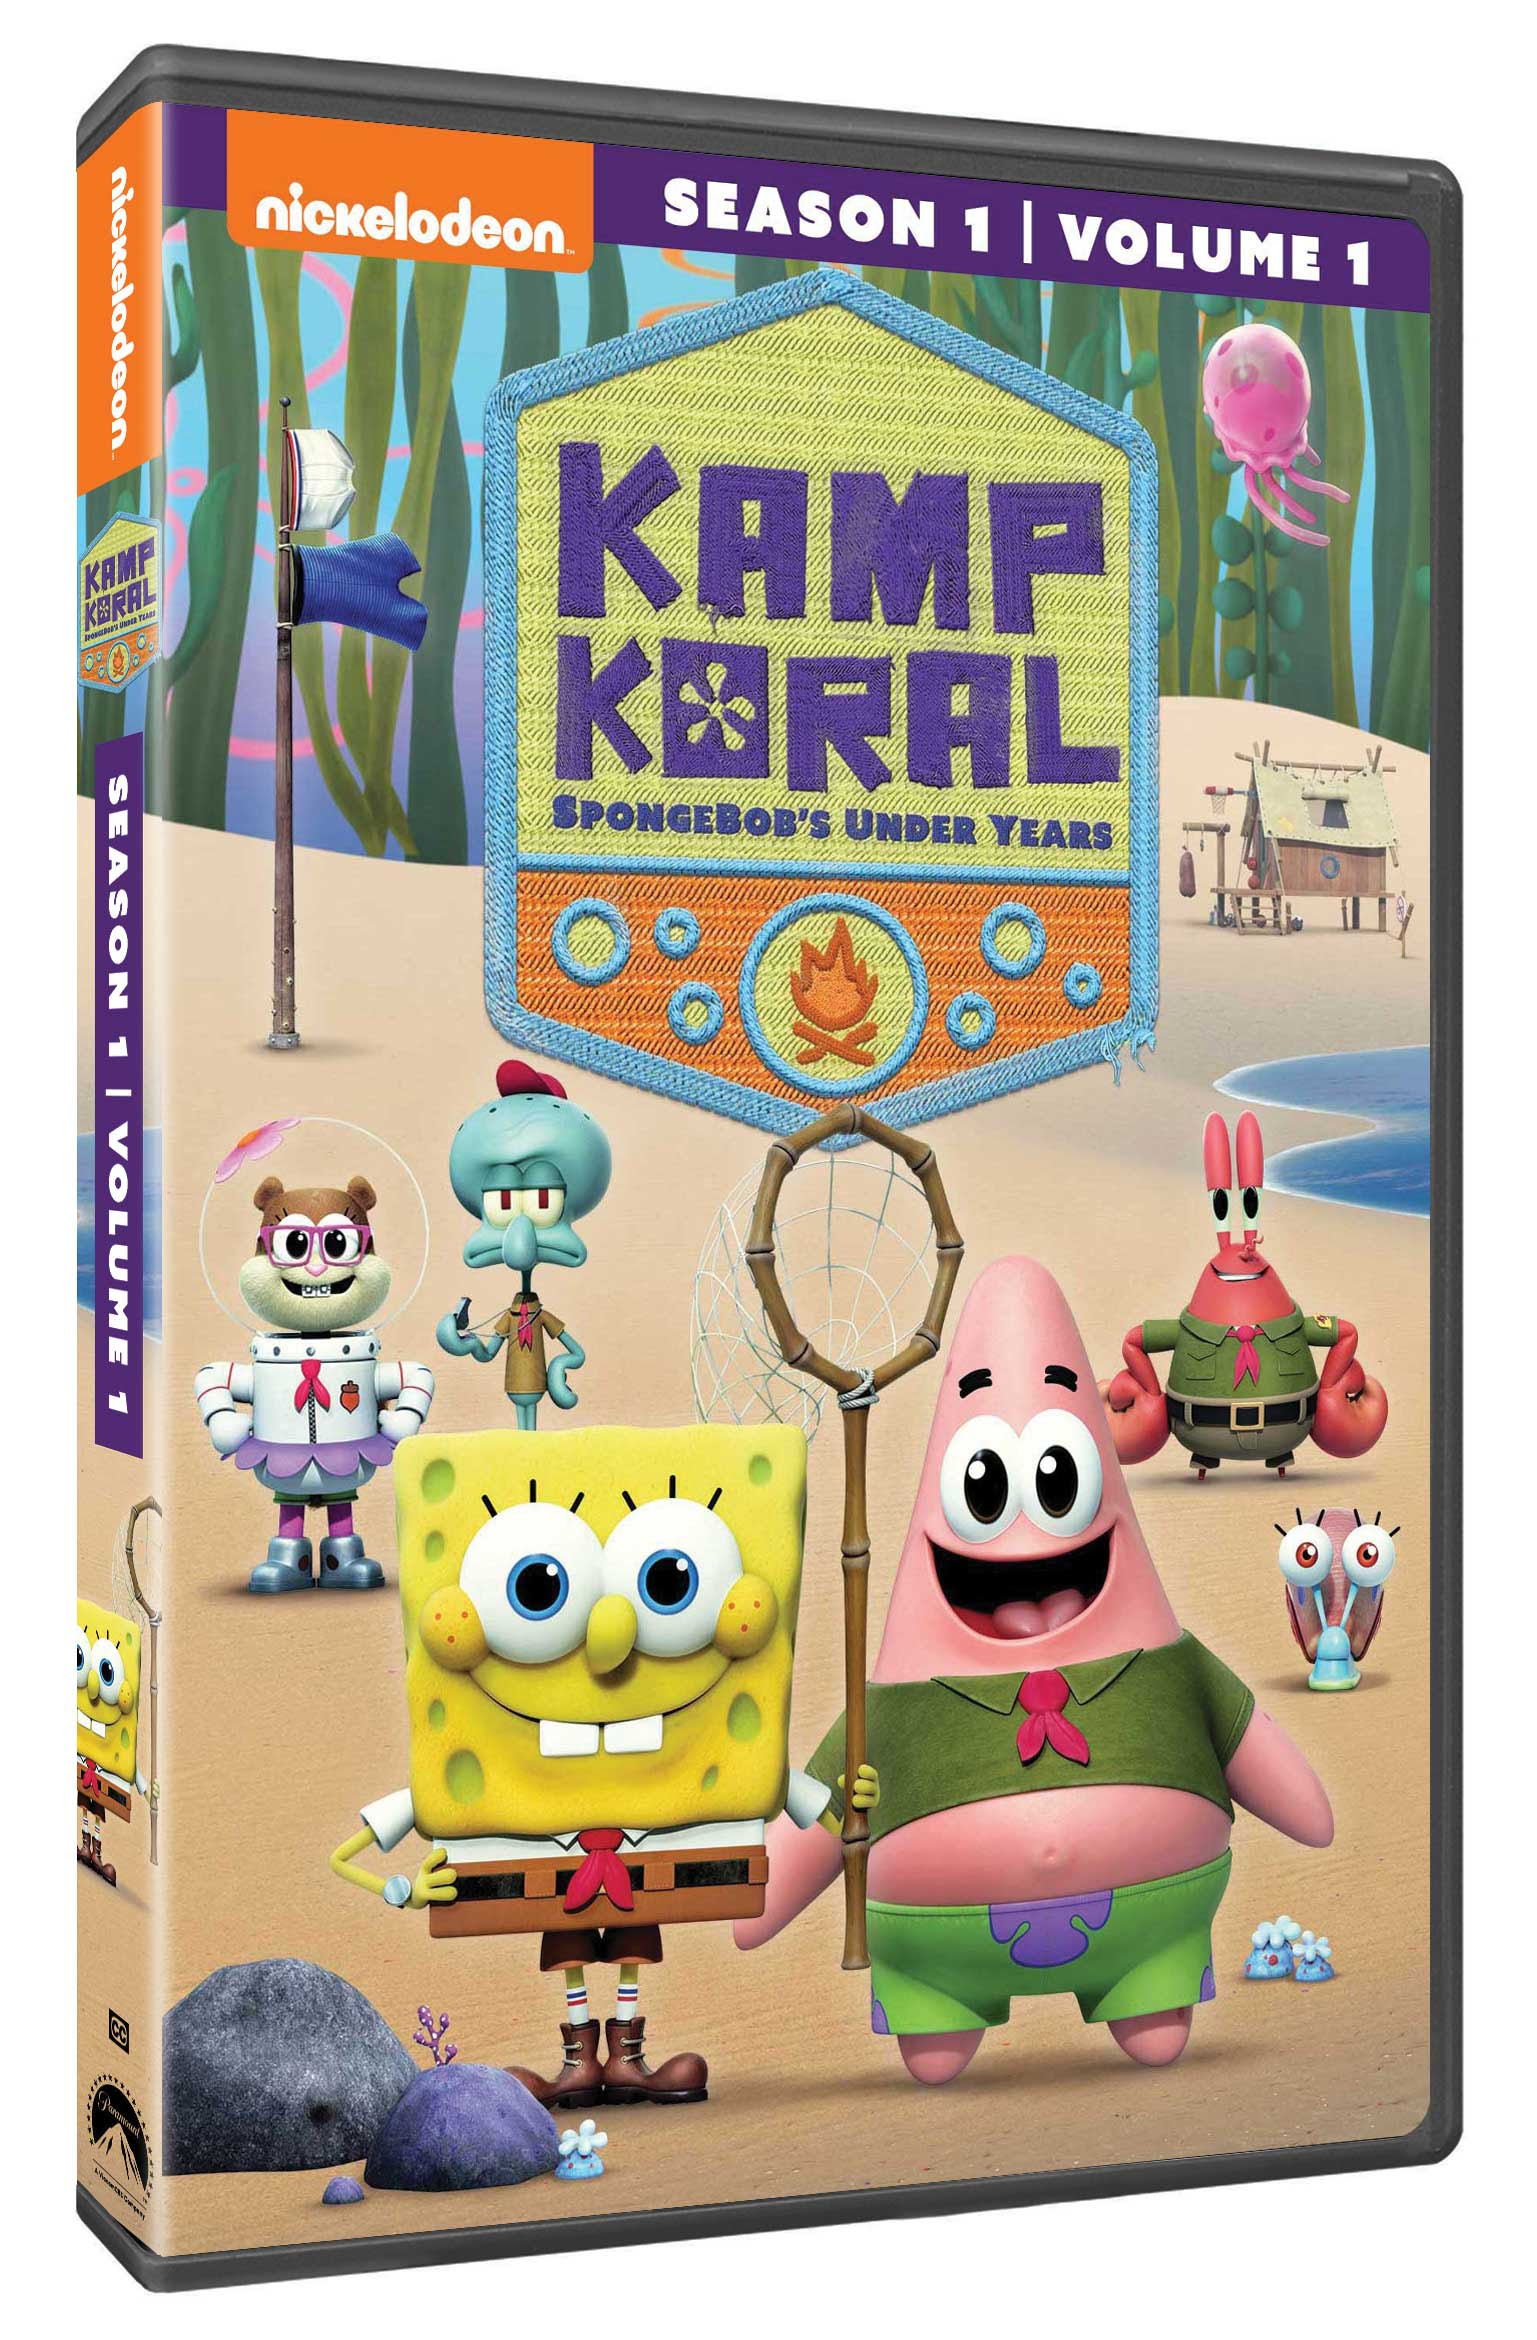 kamp koral: spongebob\'s under years dvd giveaway